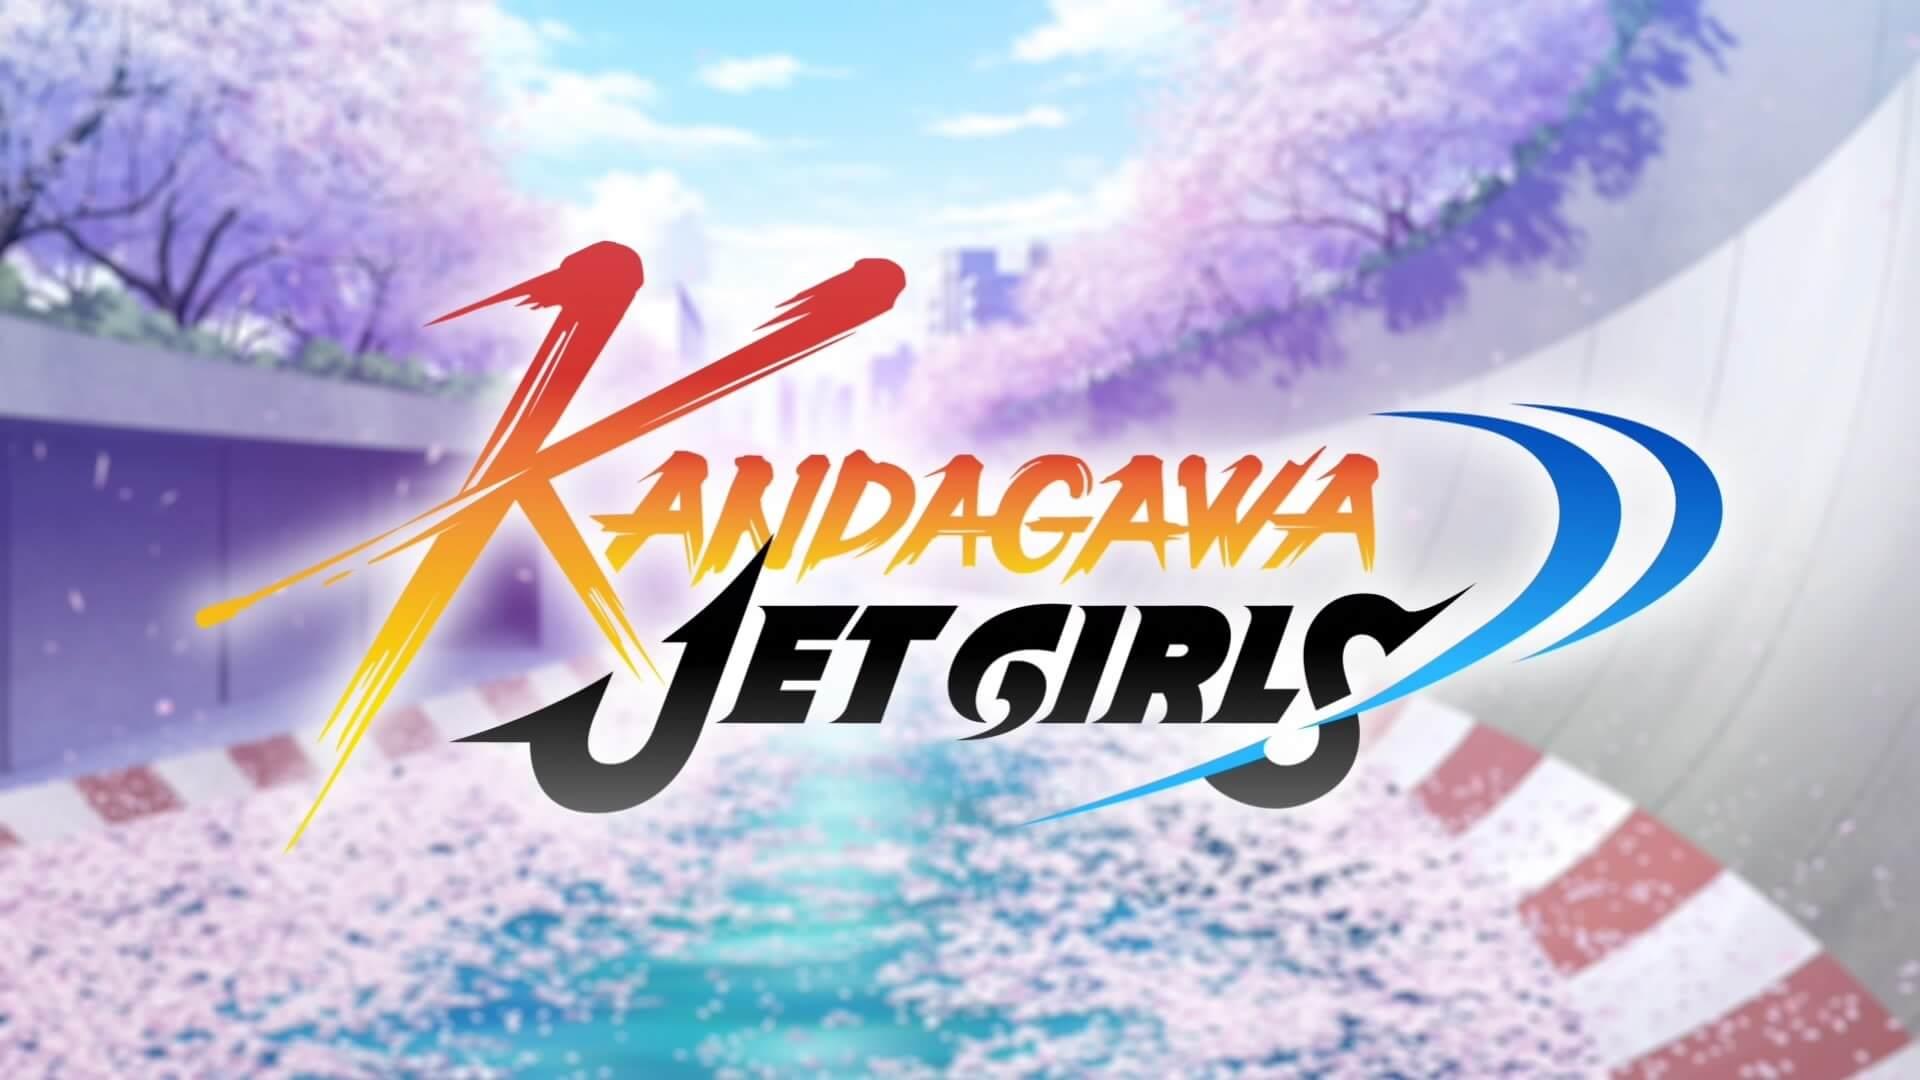 Kandagawa Jet Girls 20200822162000